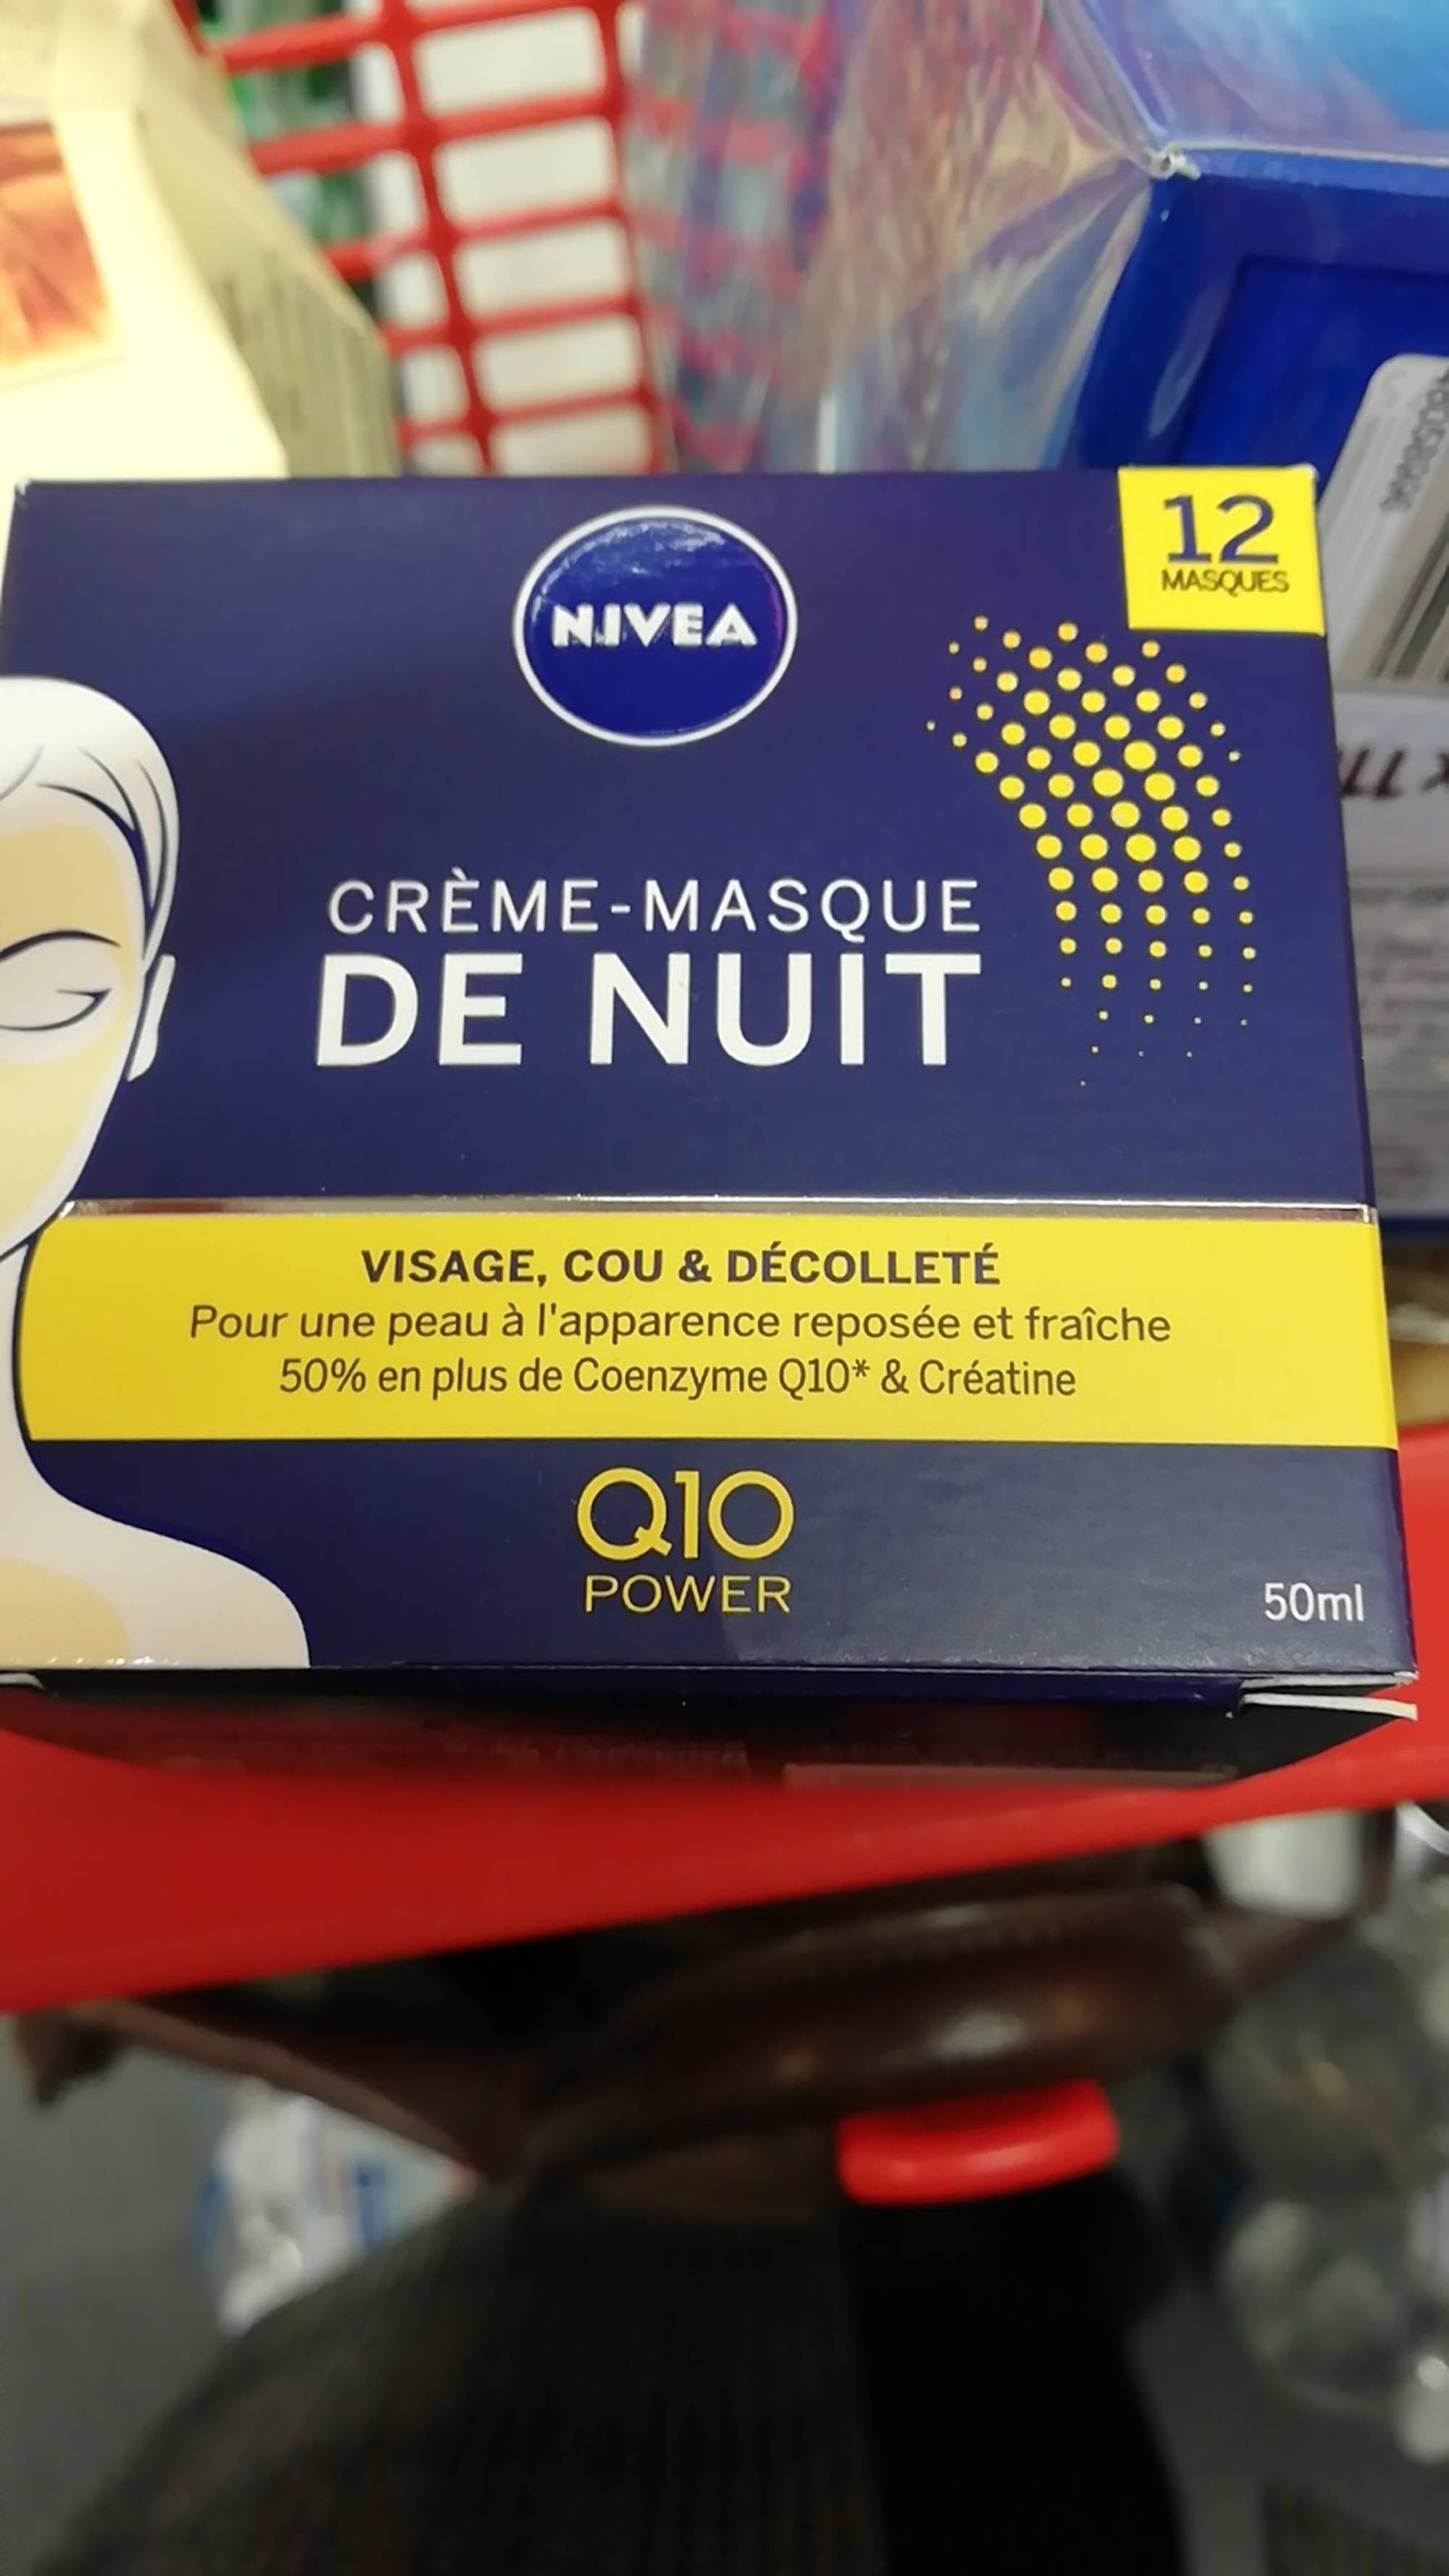 NIVEA - Q10 power - Crème-masque de nuit